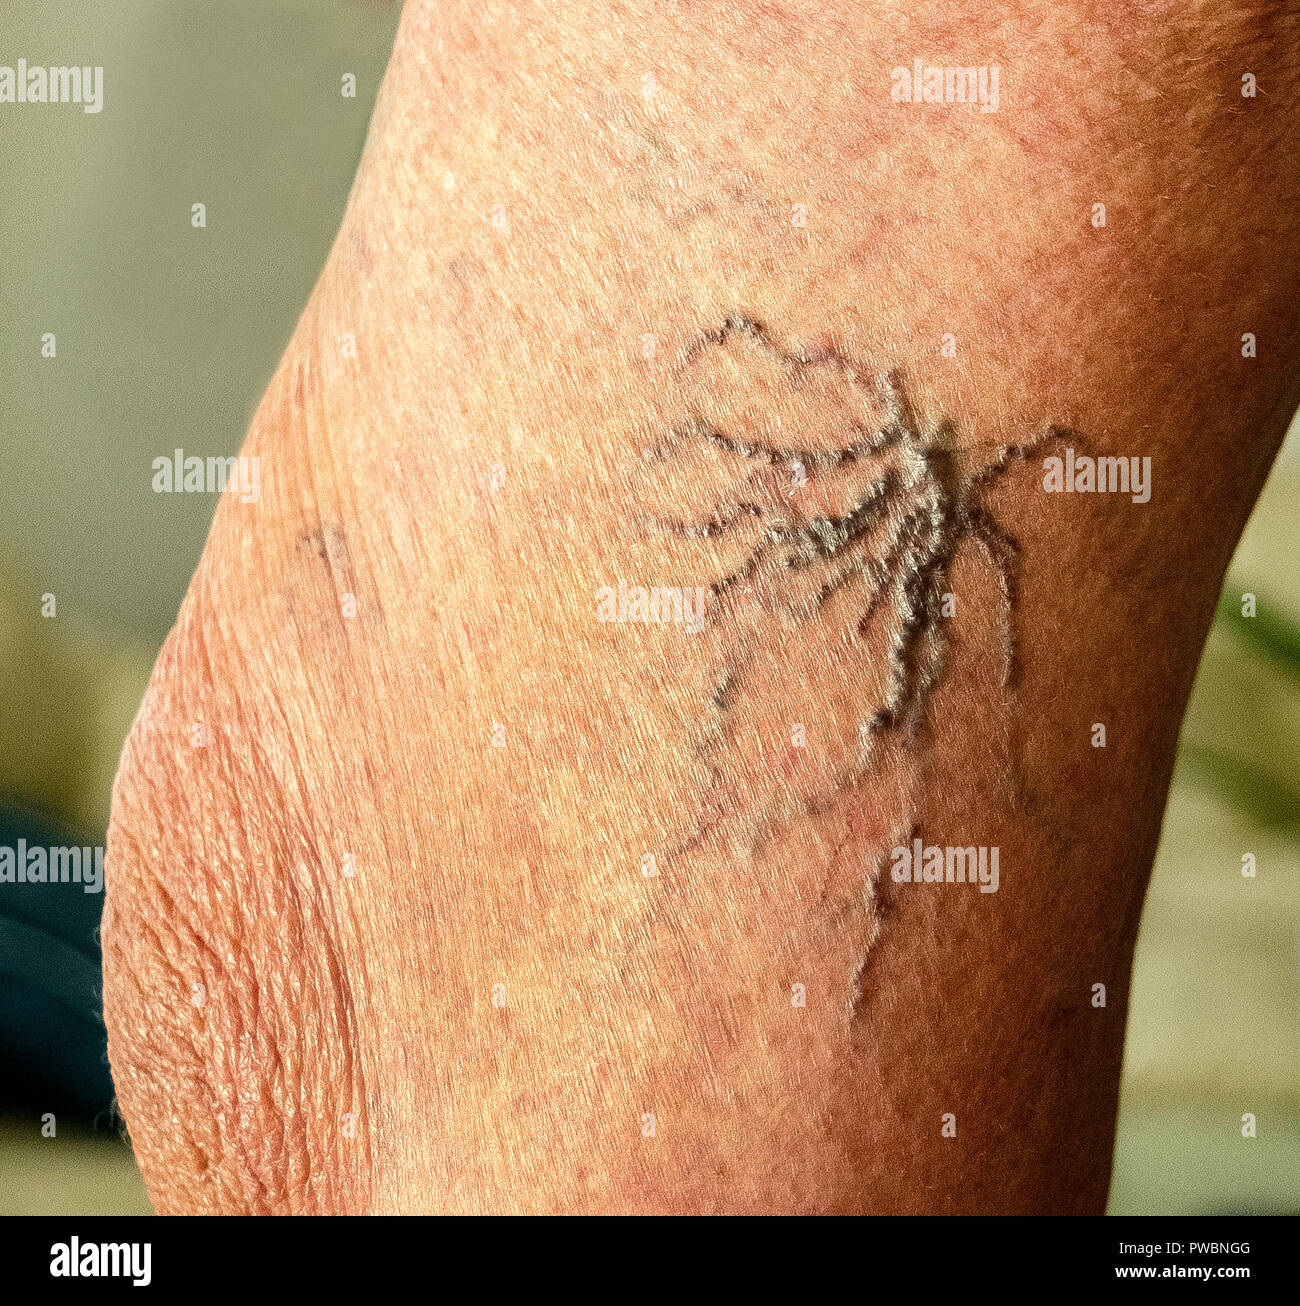 Bien-nommé varicosités afficher sous la peau à proximité du genou sur la jambe d'une femme de race blanche âgés. Les varicosités sont des versions plus petites de varices, qui sont des vaisseaux sanguins dilatés qui forment souvent dans les jambes. Elles se développent lorsque les soupapes et les parois des veines sont faibles et la cause du sang dans les veines. Certains médecins offrent le traitement que l'utilisation de produits chimiques ou de lasers pour rendre les varicosités s'atténuent ou disparaissent. Banque D'Images